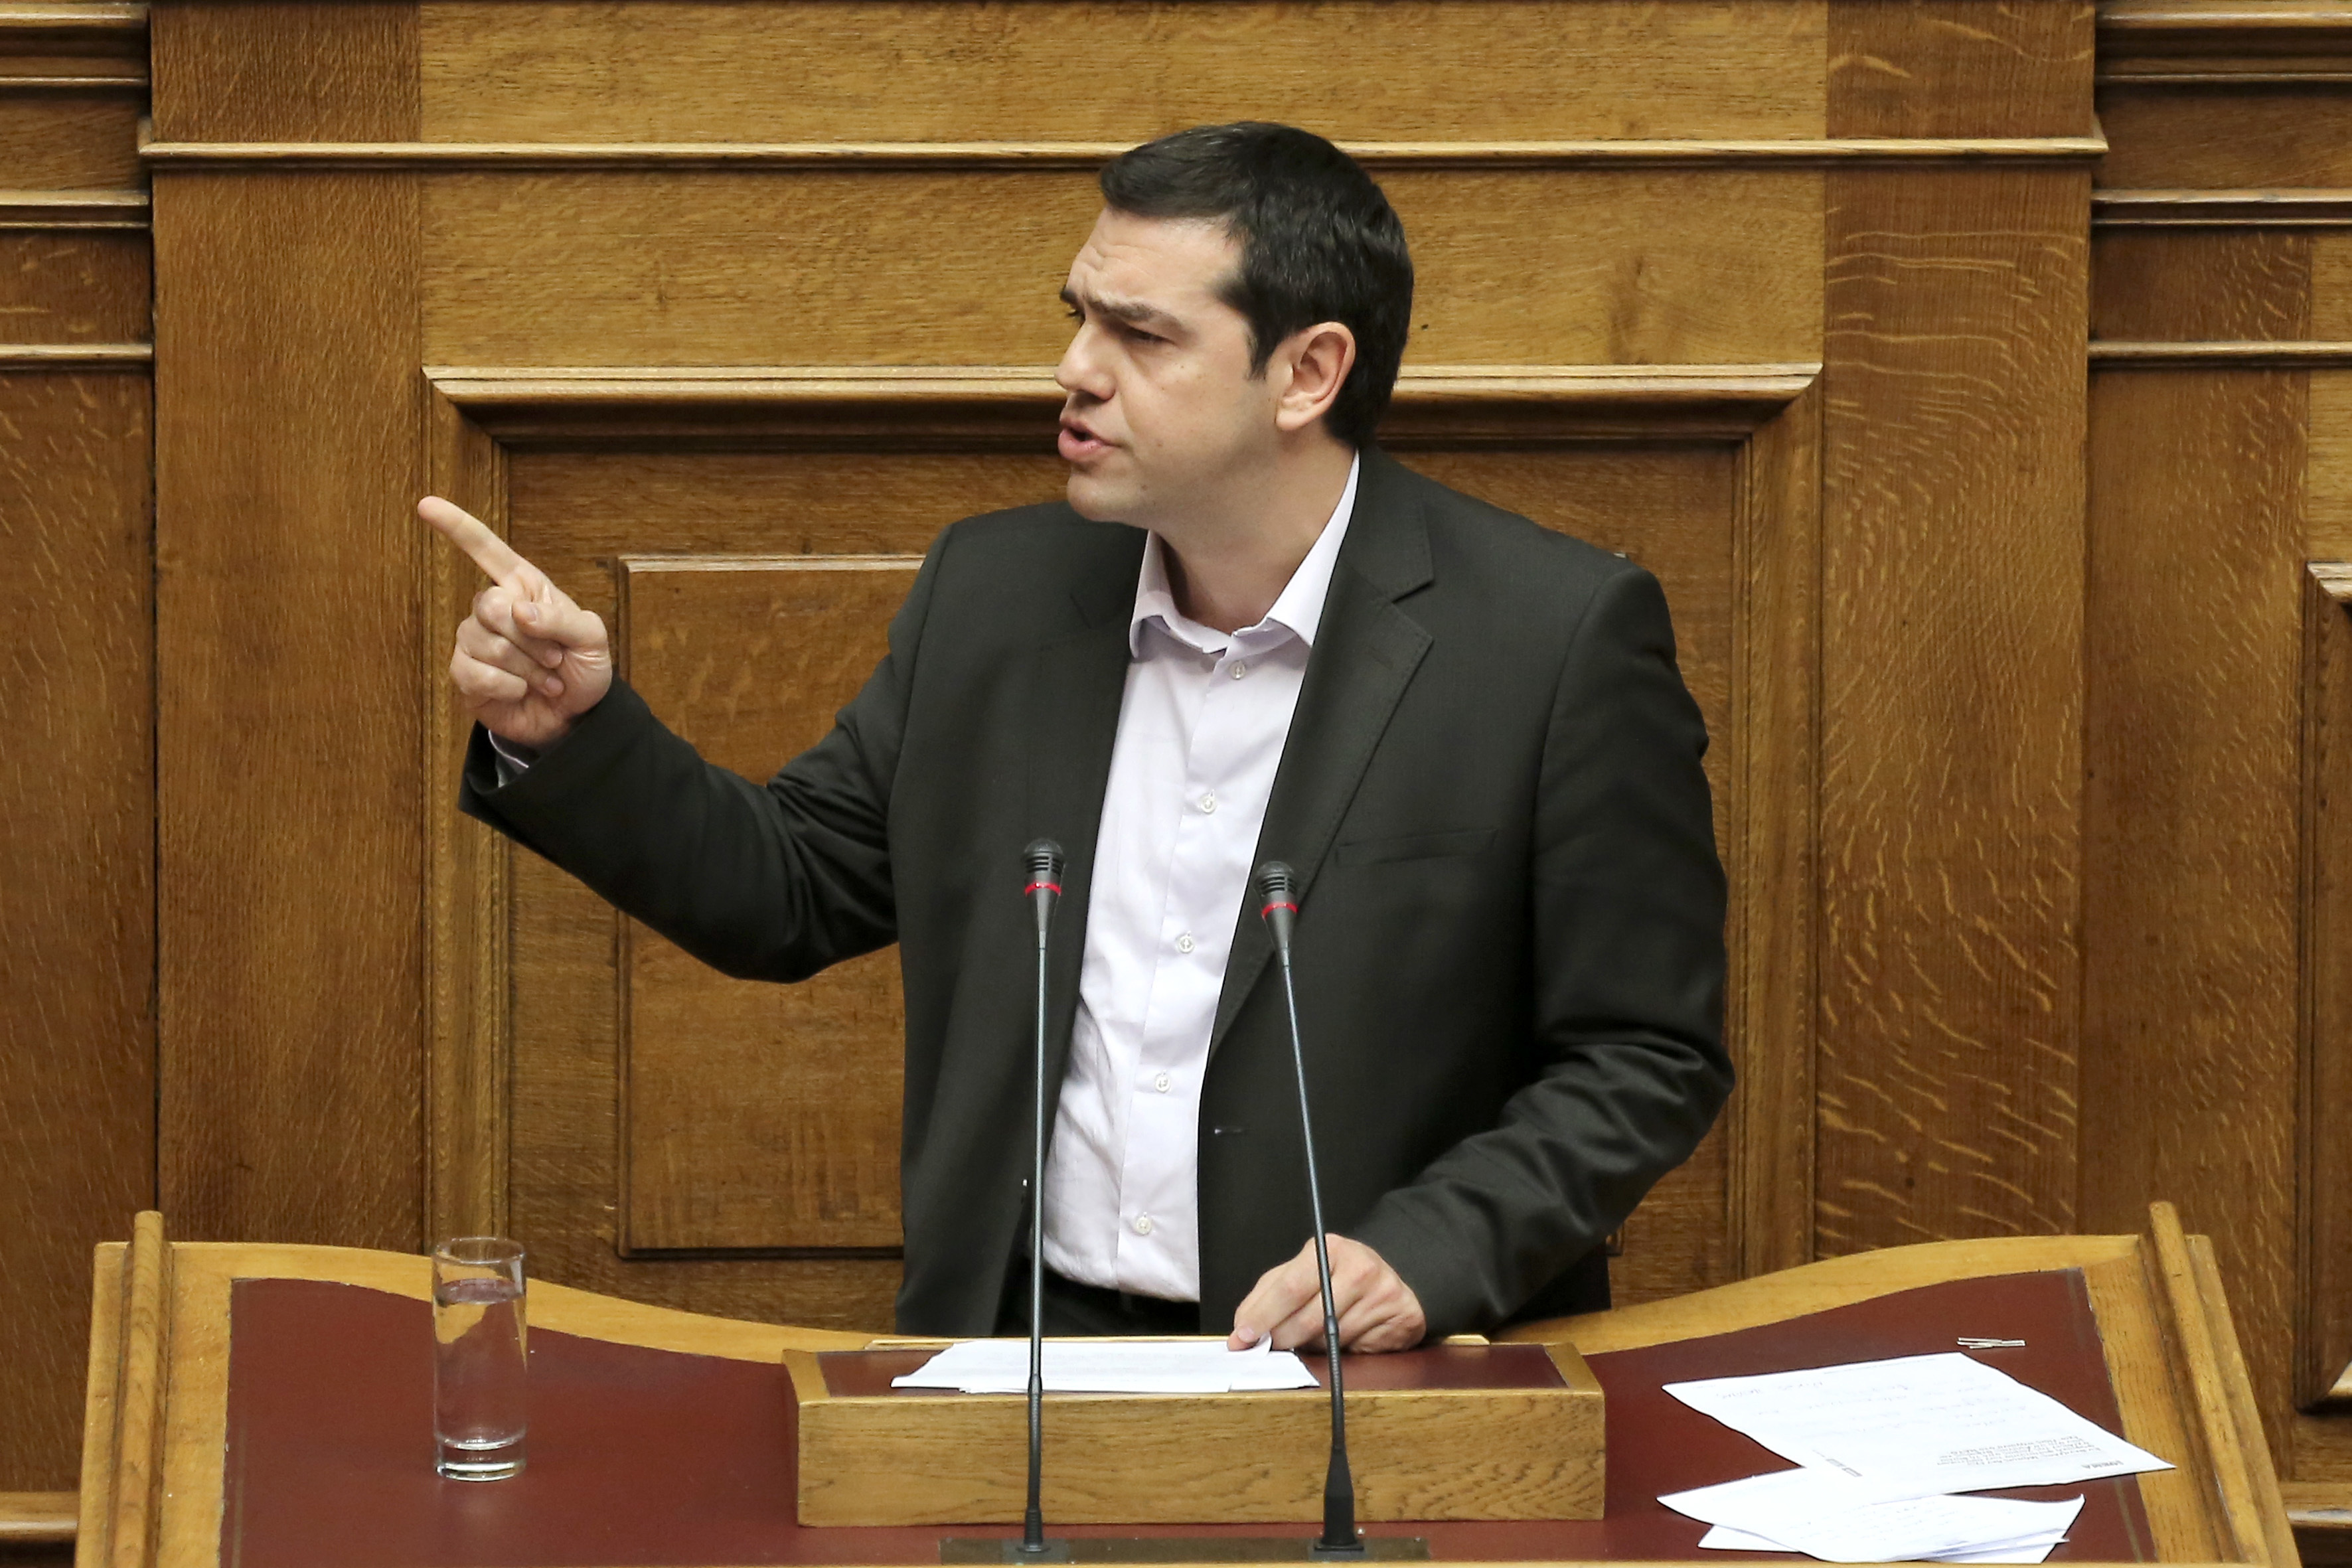 ΣΥΡΙΖΑ: Η κυβέρνηση υποκρίνεται, έχει ήδη συμφωνήσει με την Τρόικα